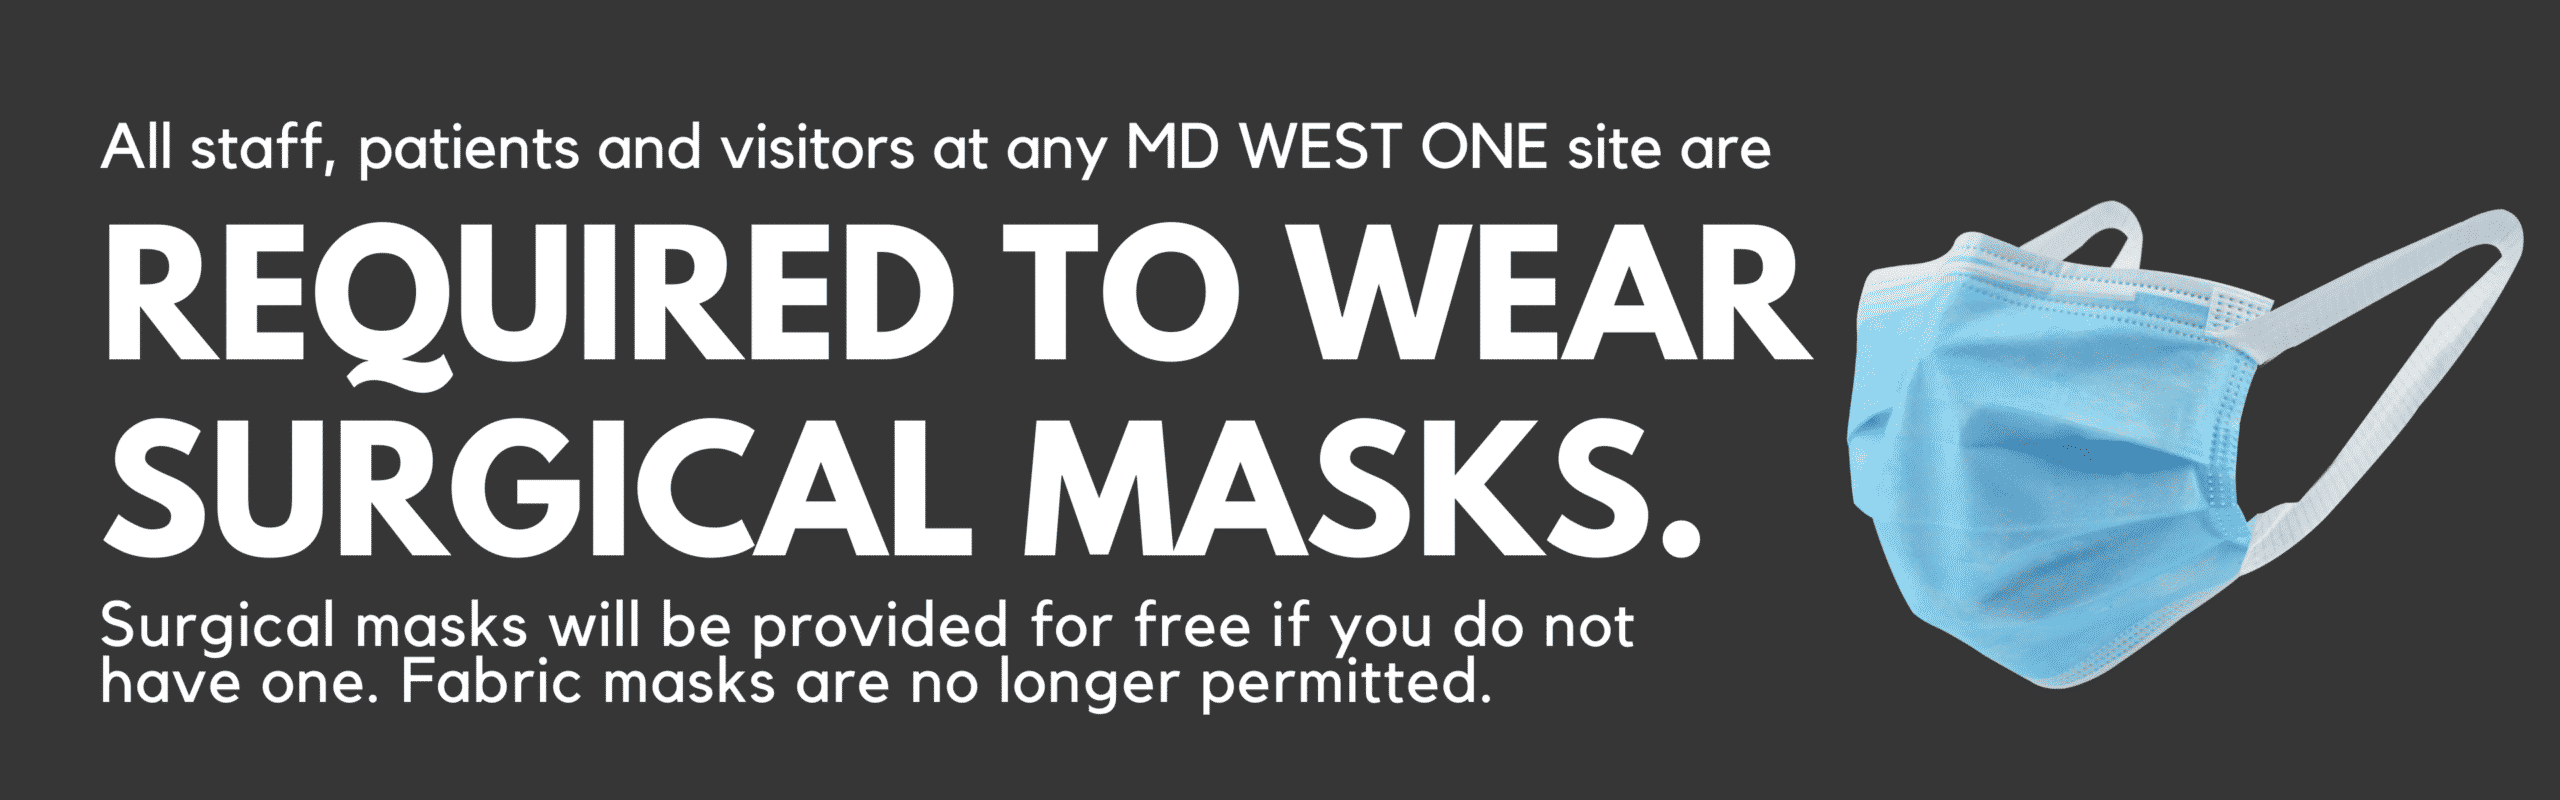 surgical masks disclaimer